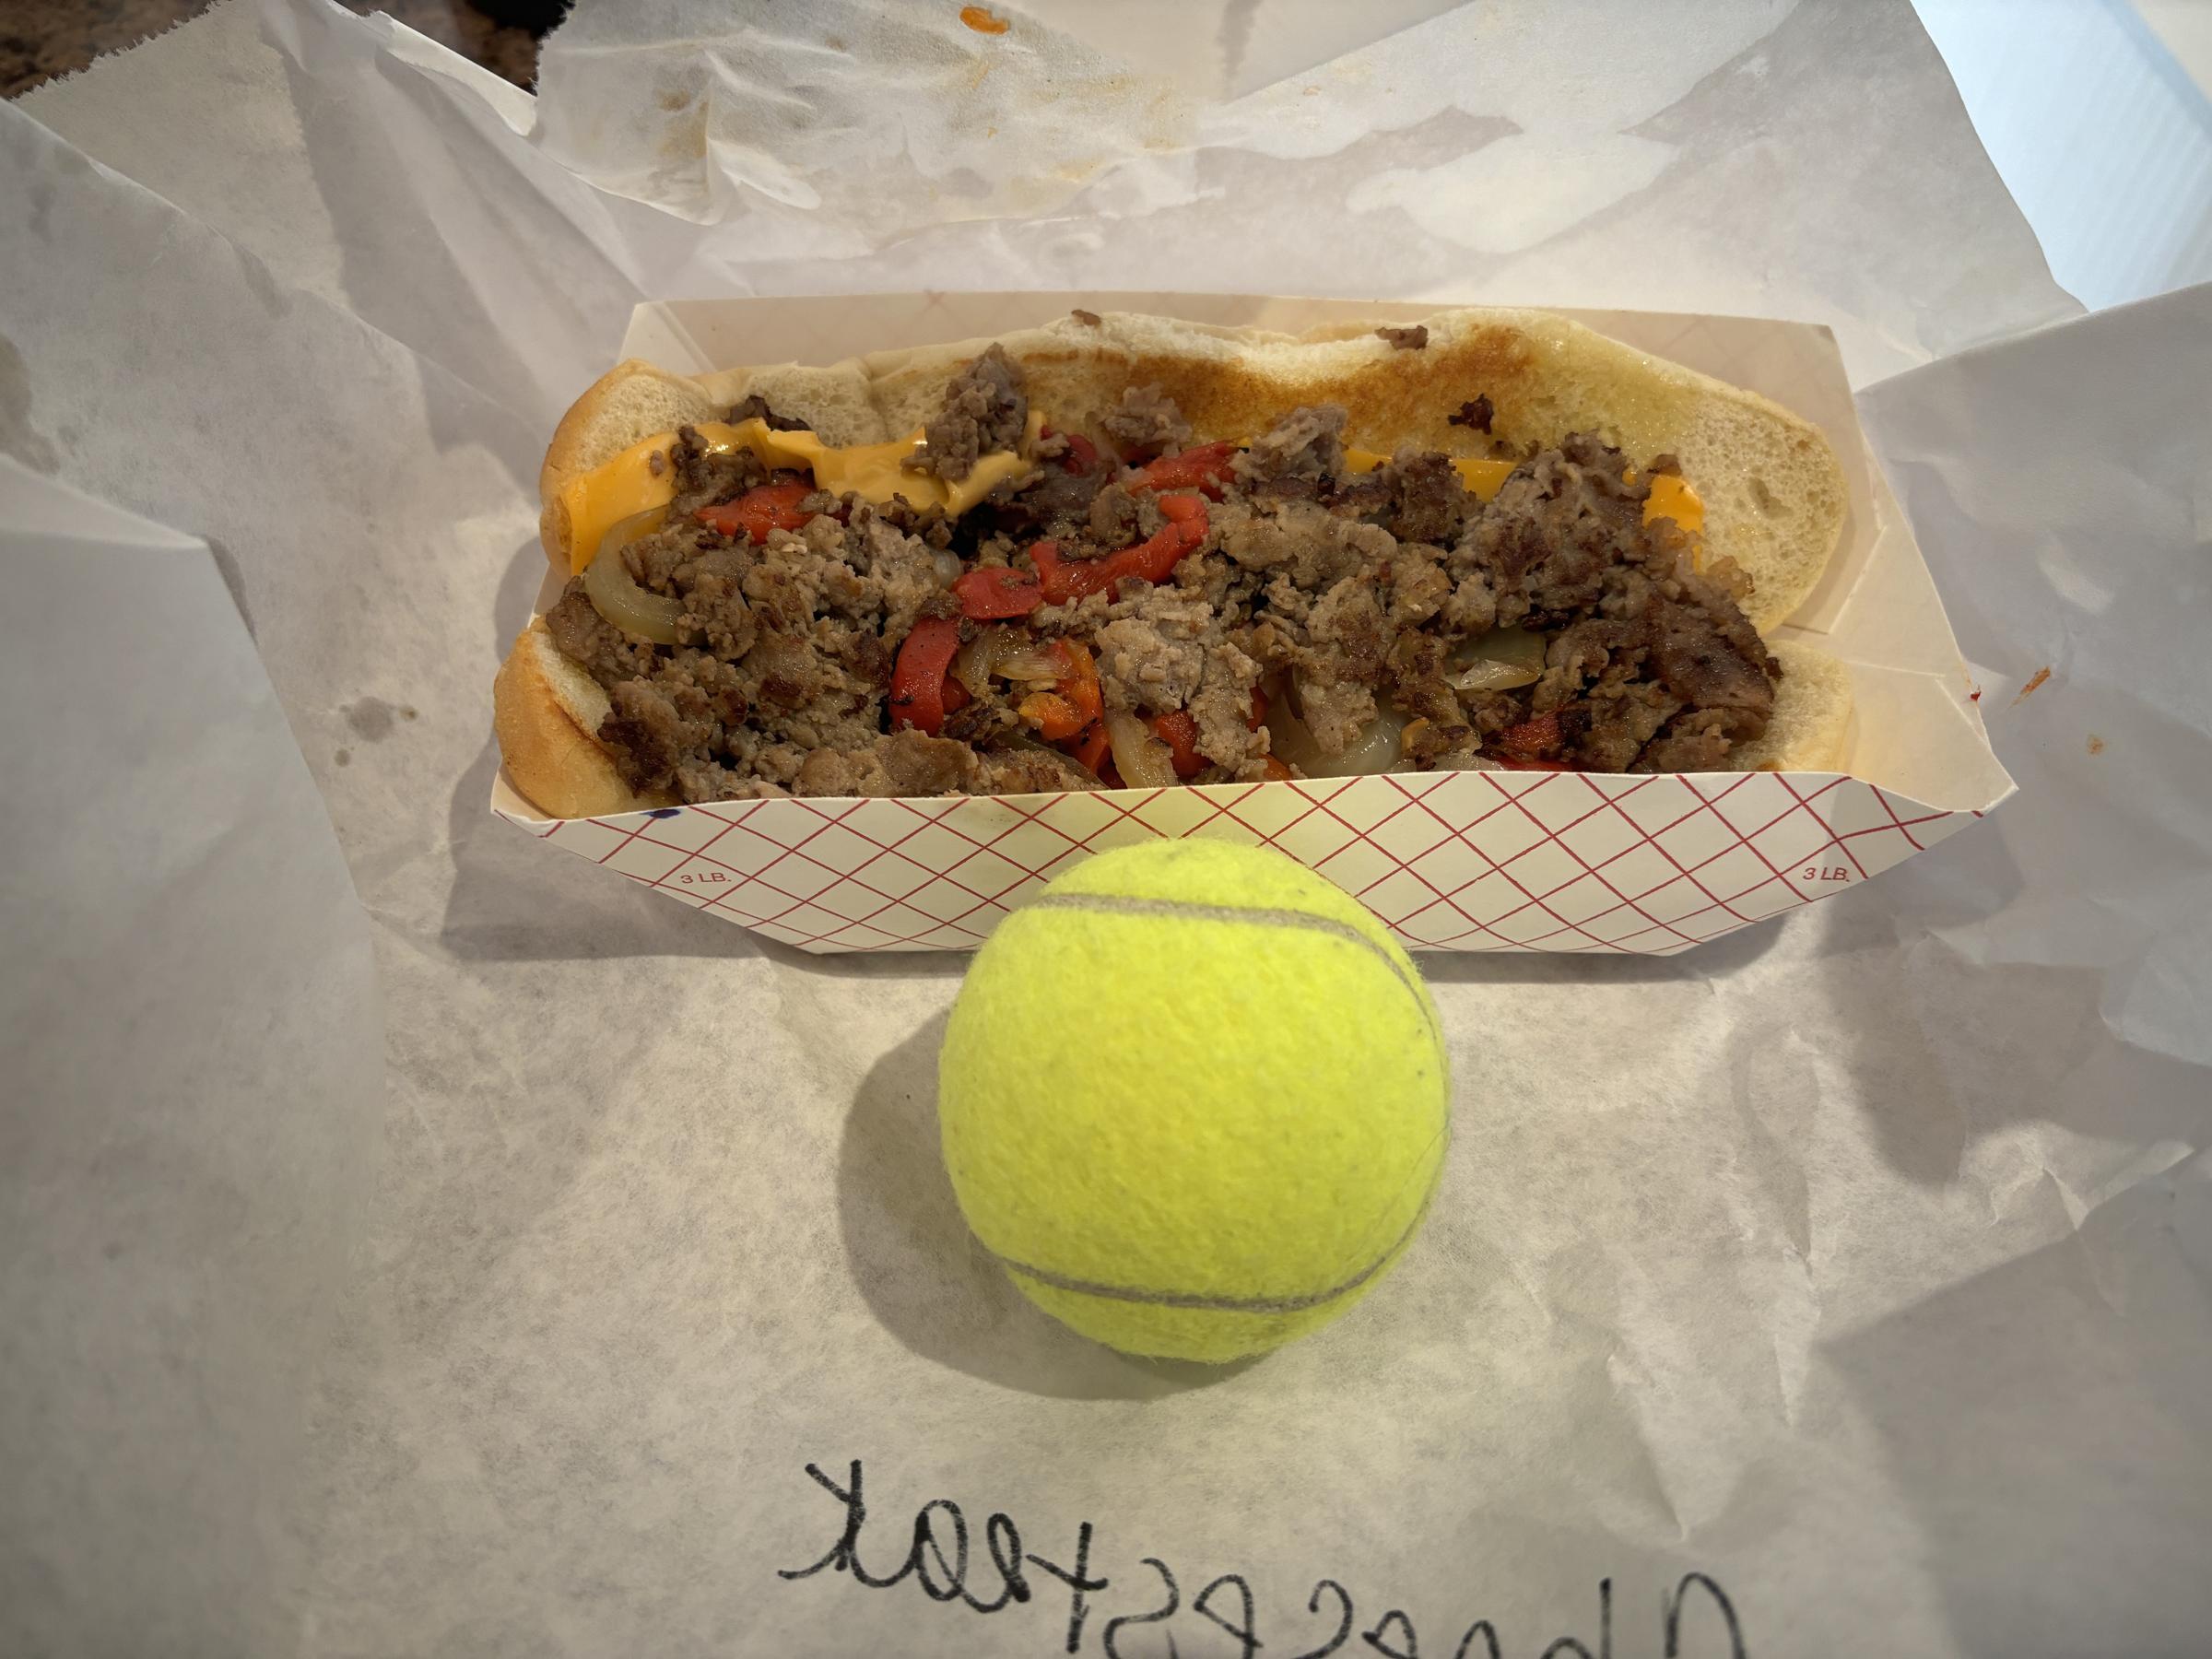 Fozzie's Sandwich Emporium cheesesteak tennis ball